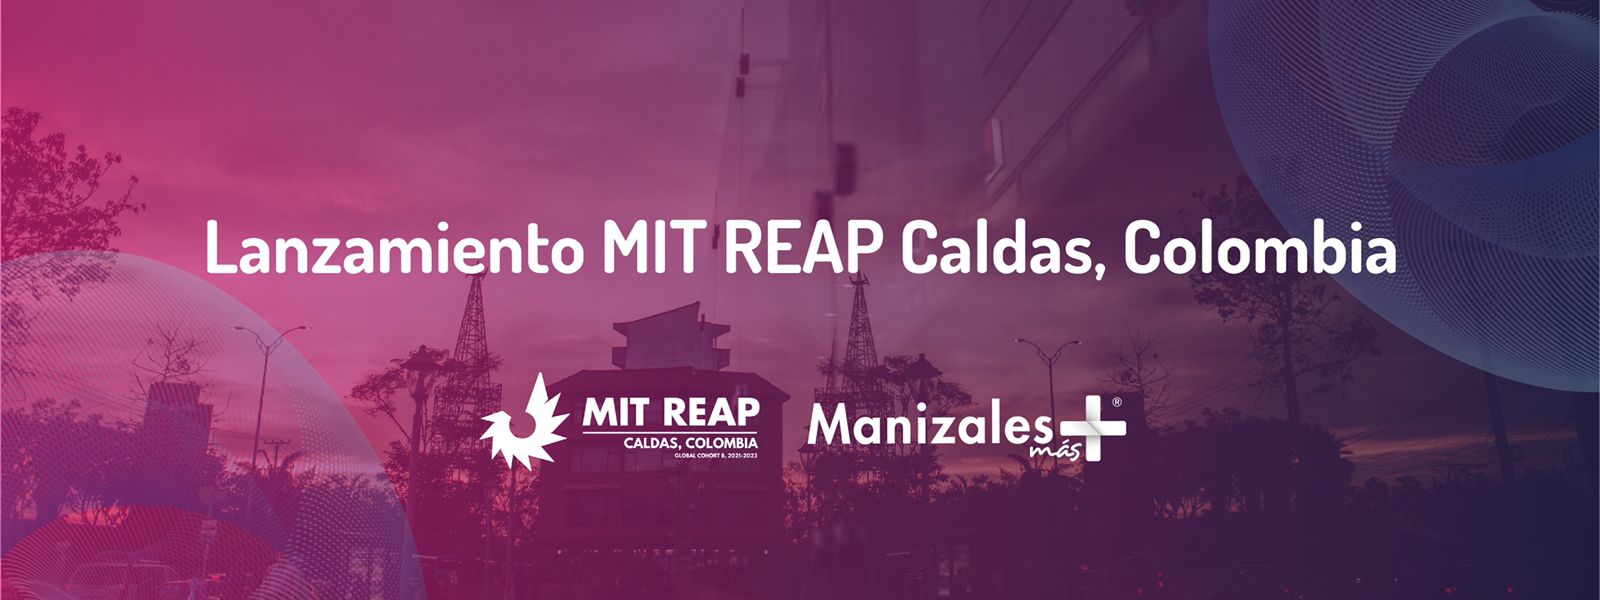 El departamento de Caldas es la primera región aceptada en el Programa de Aceleración de Emprendimiento Regional del MIT (MIT REAP).